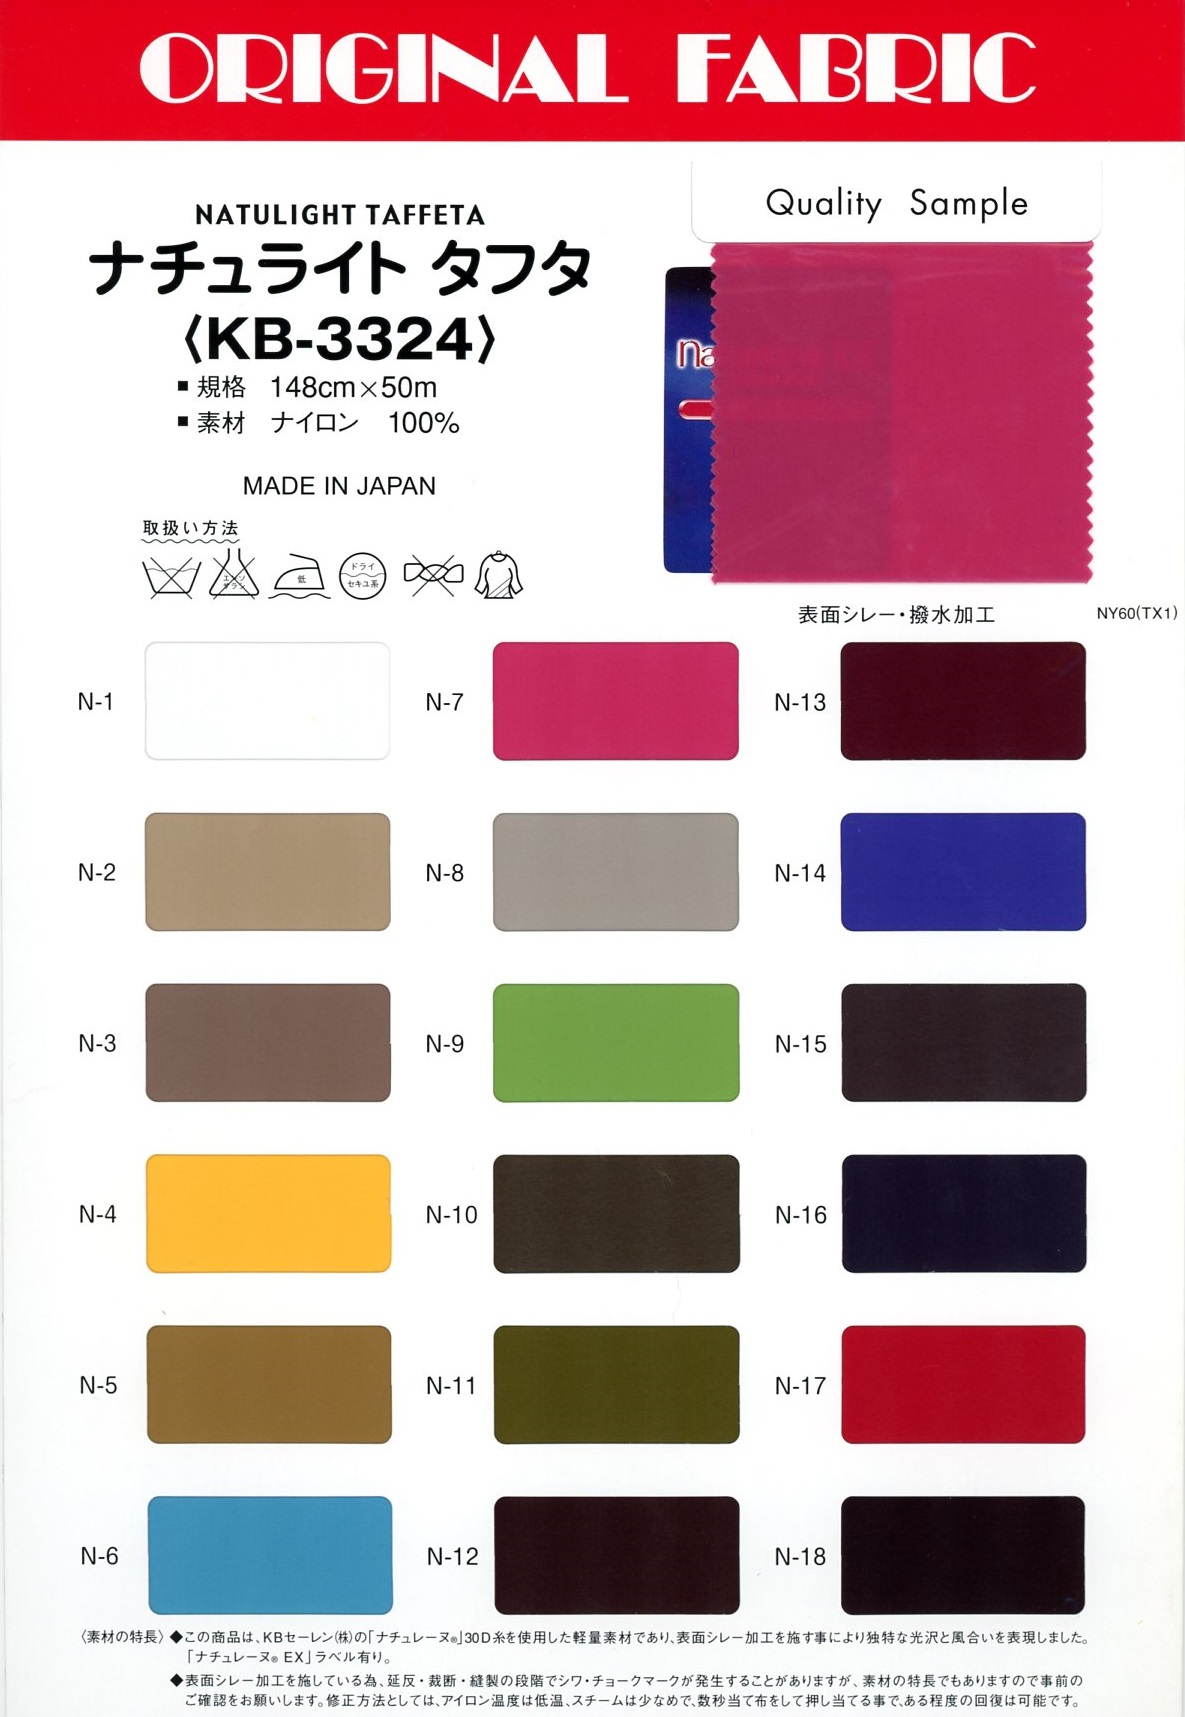 KB-3324 Naturite Taffeta[Textile / Fabric] Masuda